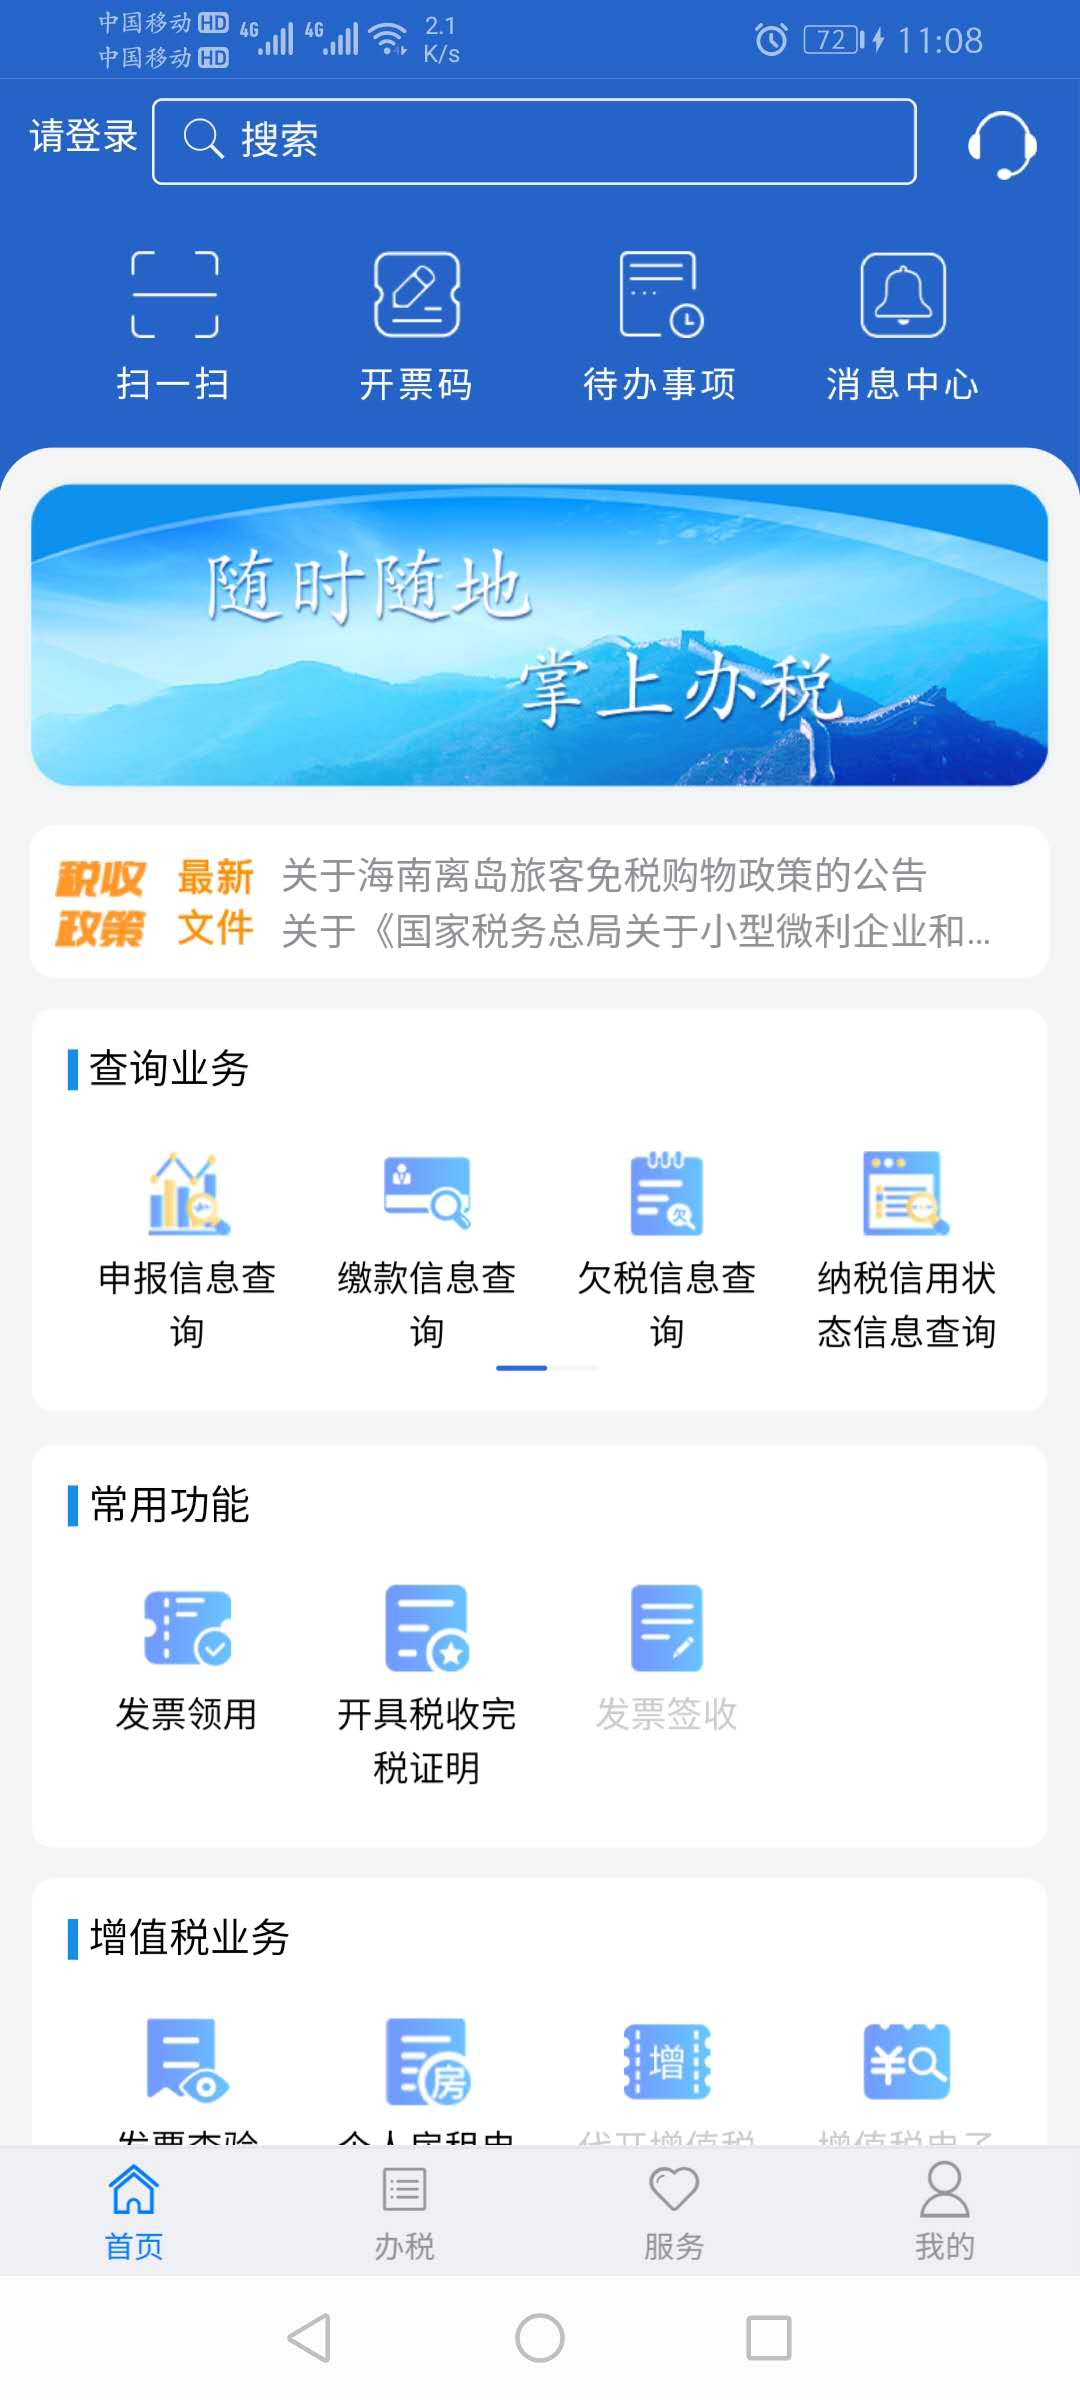 随时随地办理税务事项，江苏税务app全新上线